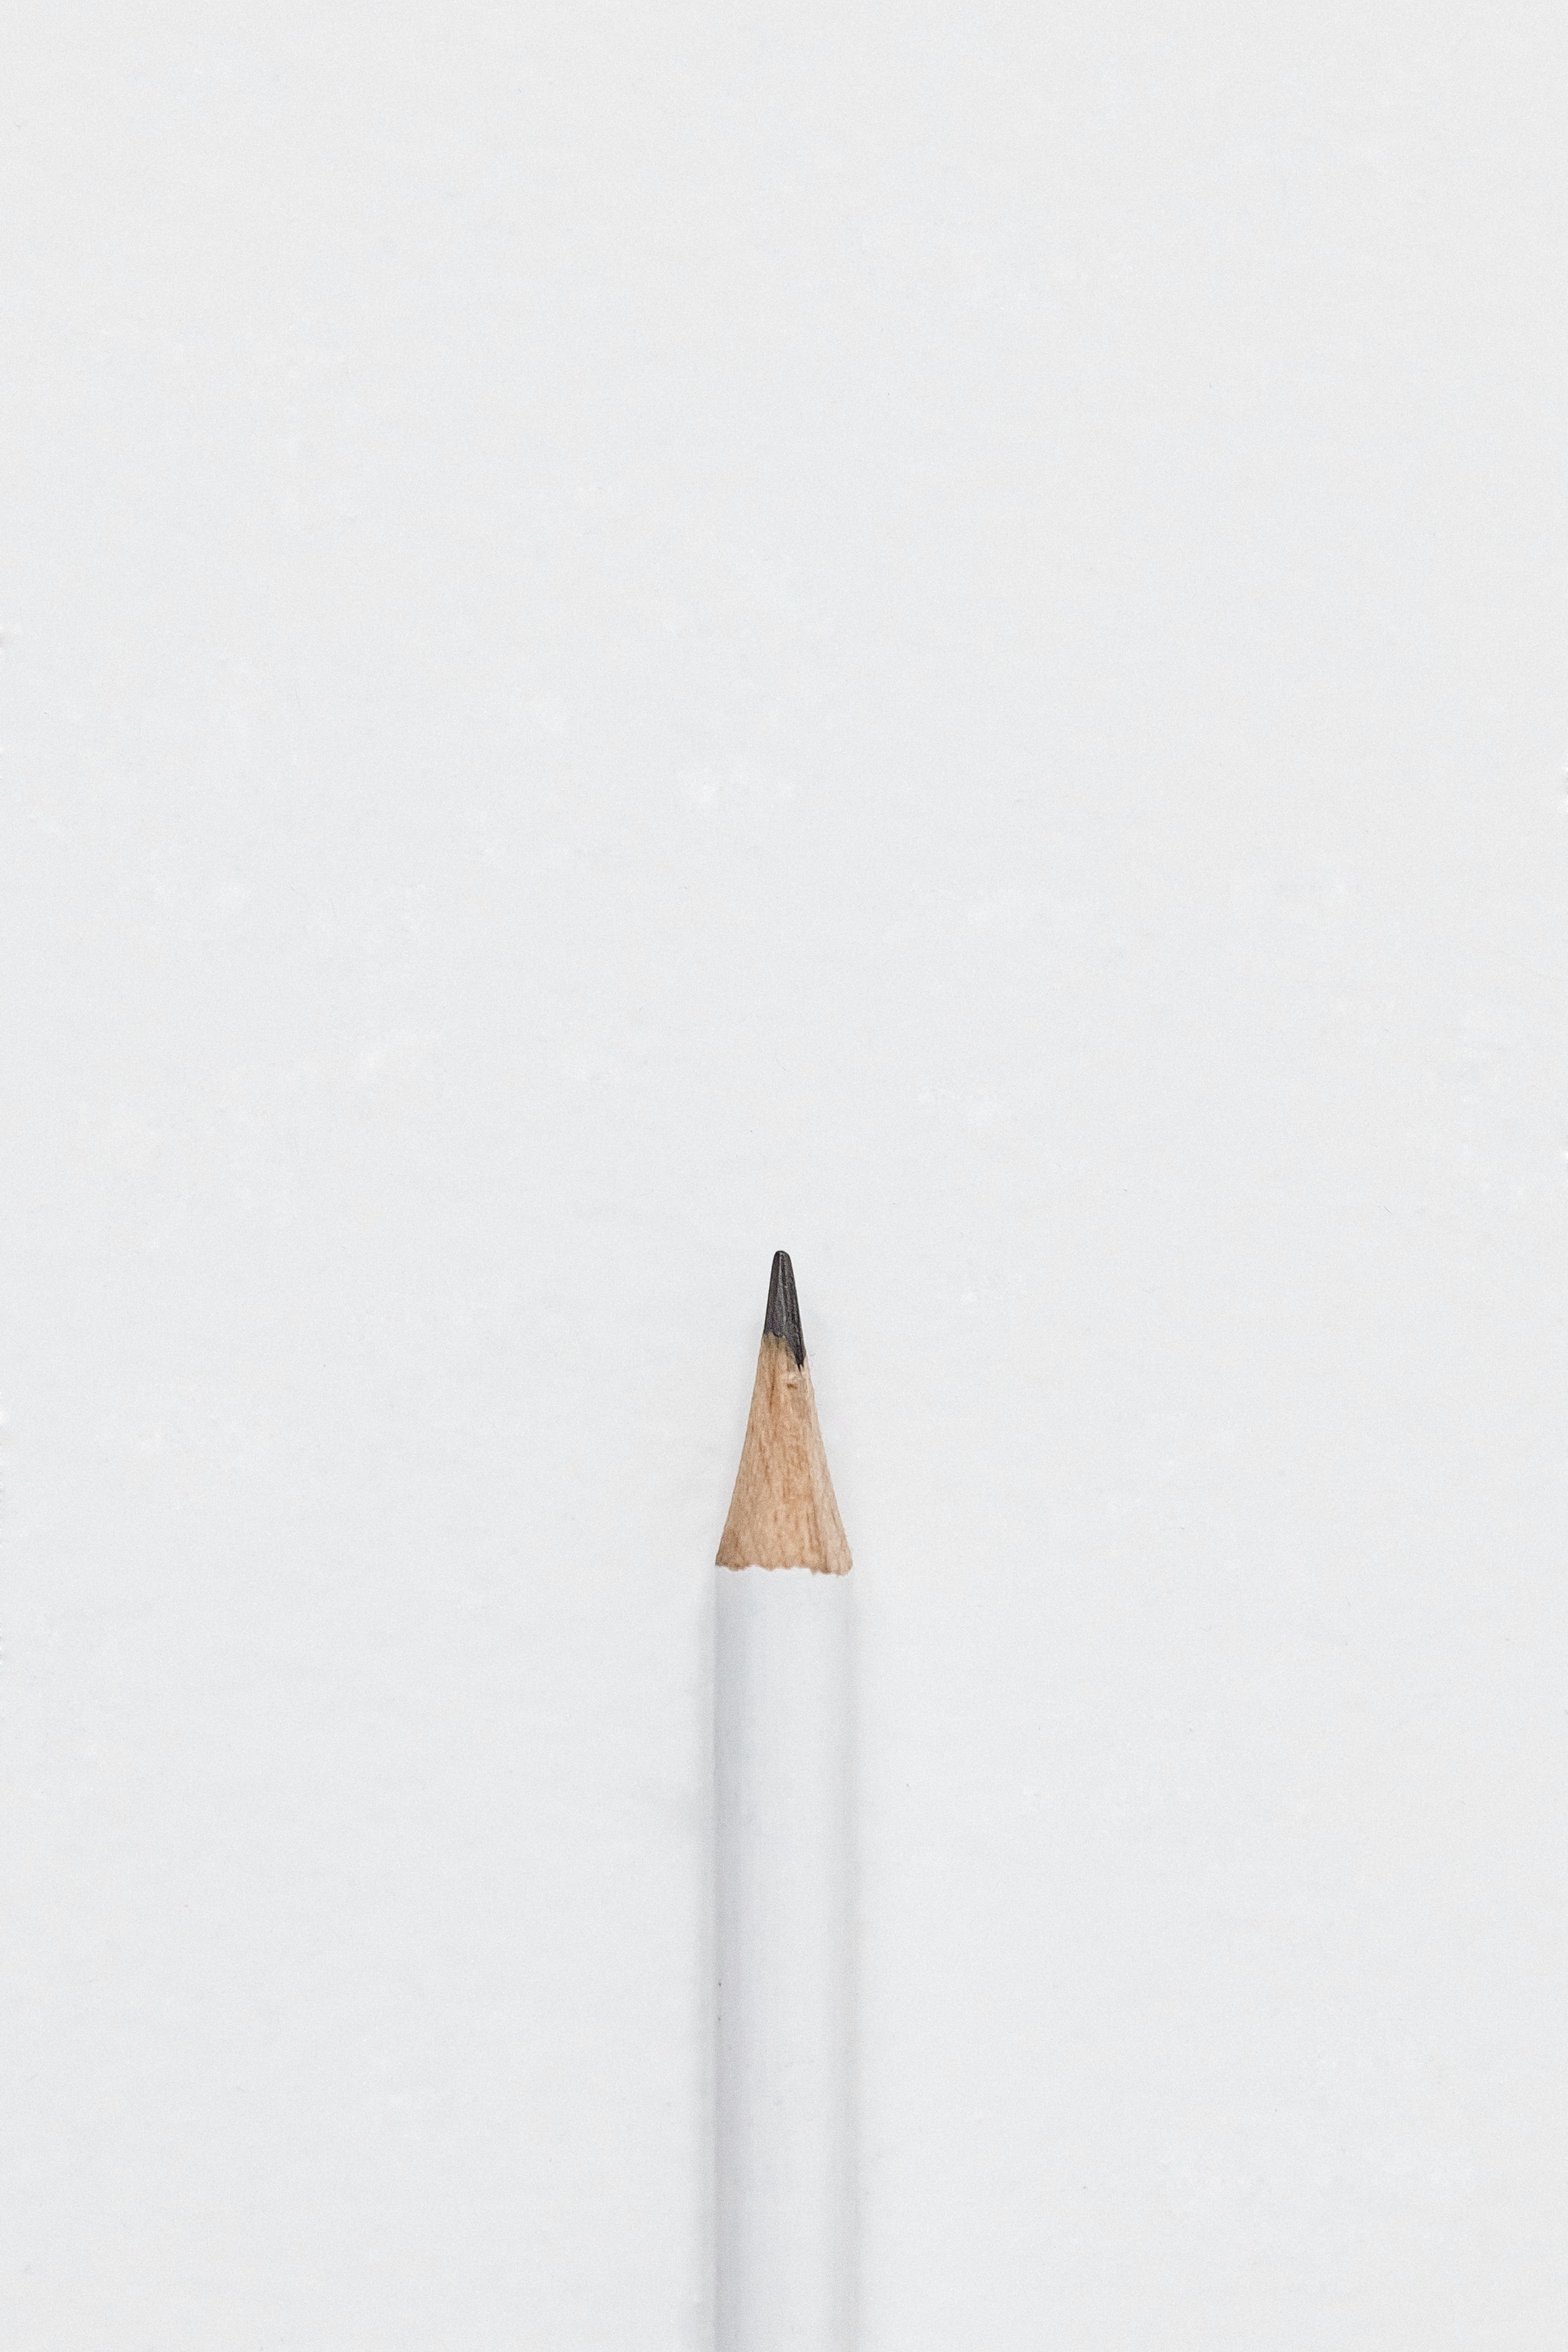 免费照片一支简单的铅笔